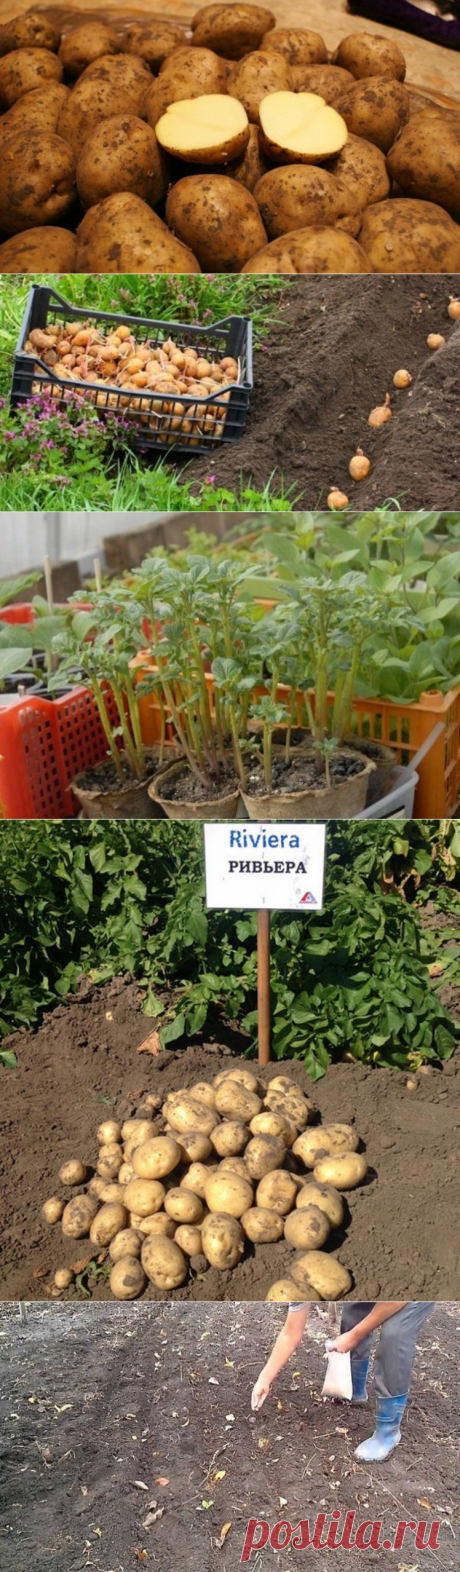 Картофель Ривьера характеристики и описание сорта, с отзывами и фото. Вкусовые качества урожайность, посадка и уход